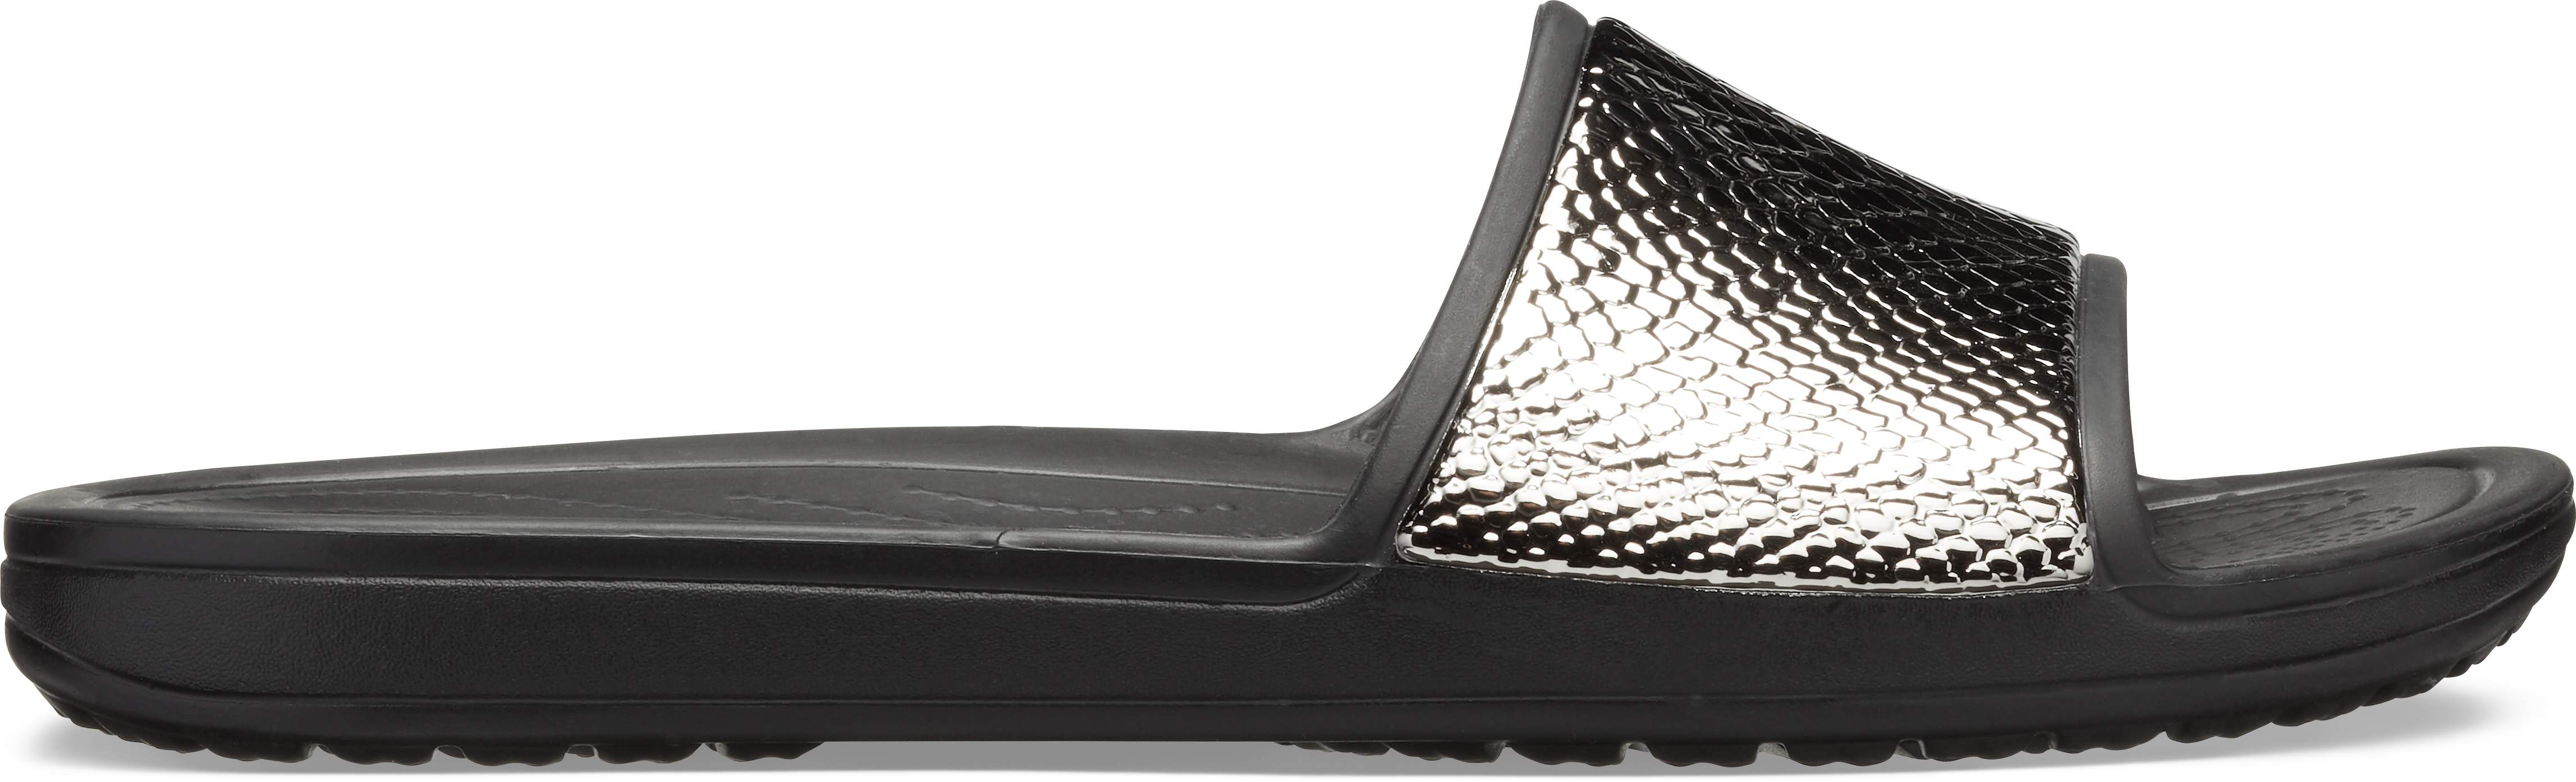 women's crocs sloane metallic texture slide